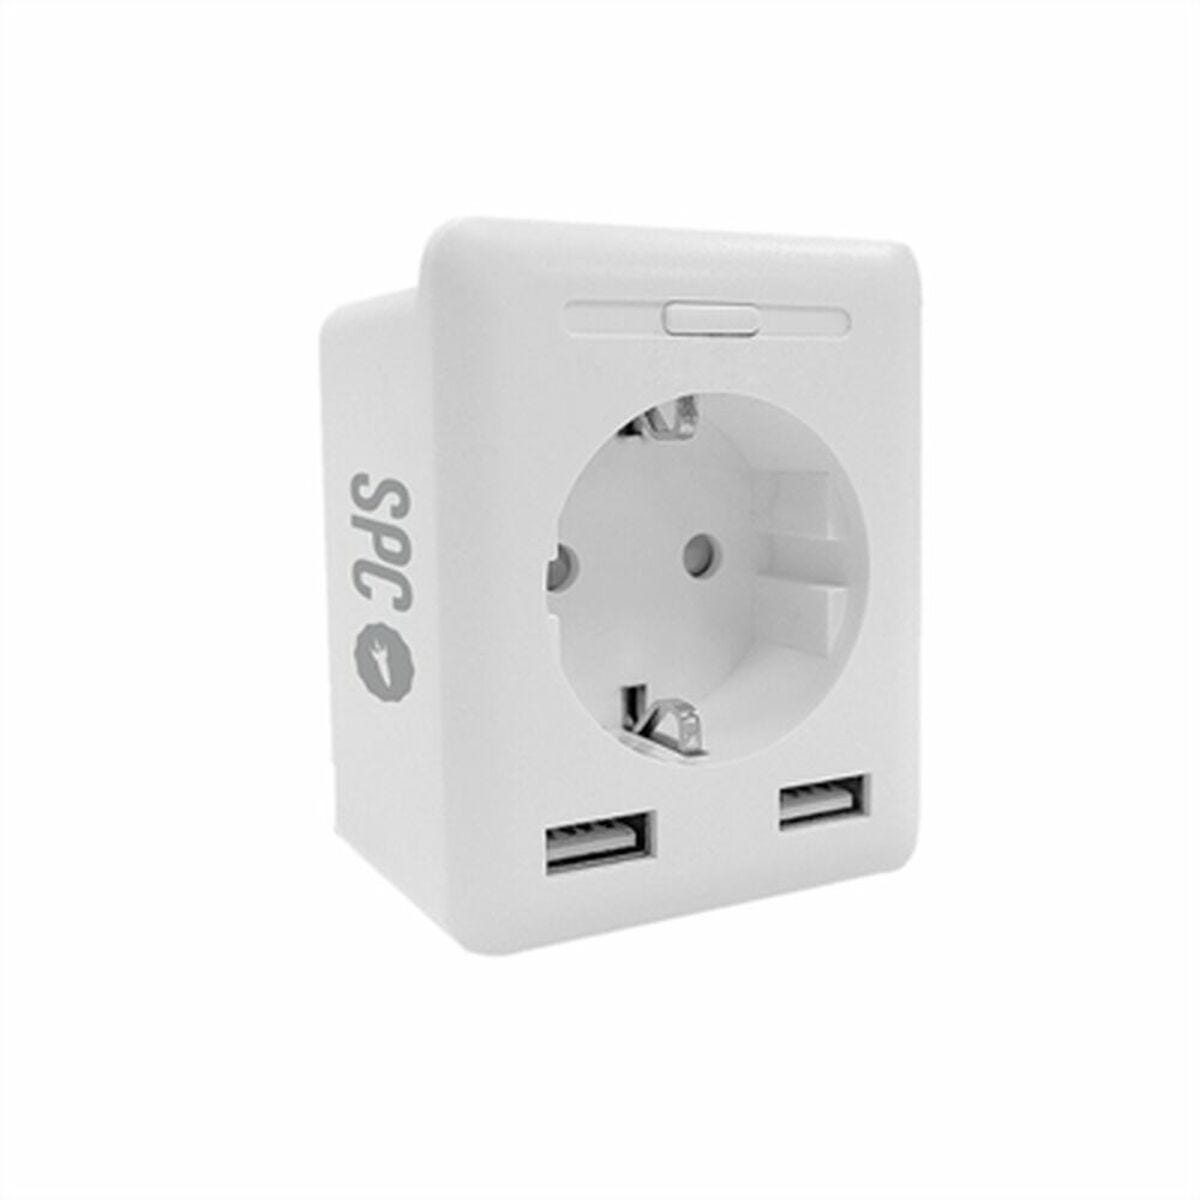 Enchufe inteligente SPC CLEVER PLUG USB con 2 entradas USB, WiFi, ahorro  energético y compatible con Alexa y Google Home - Blanco